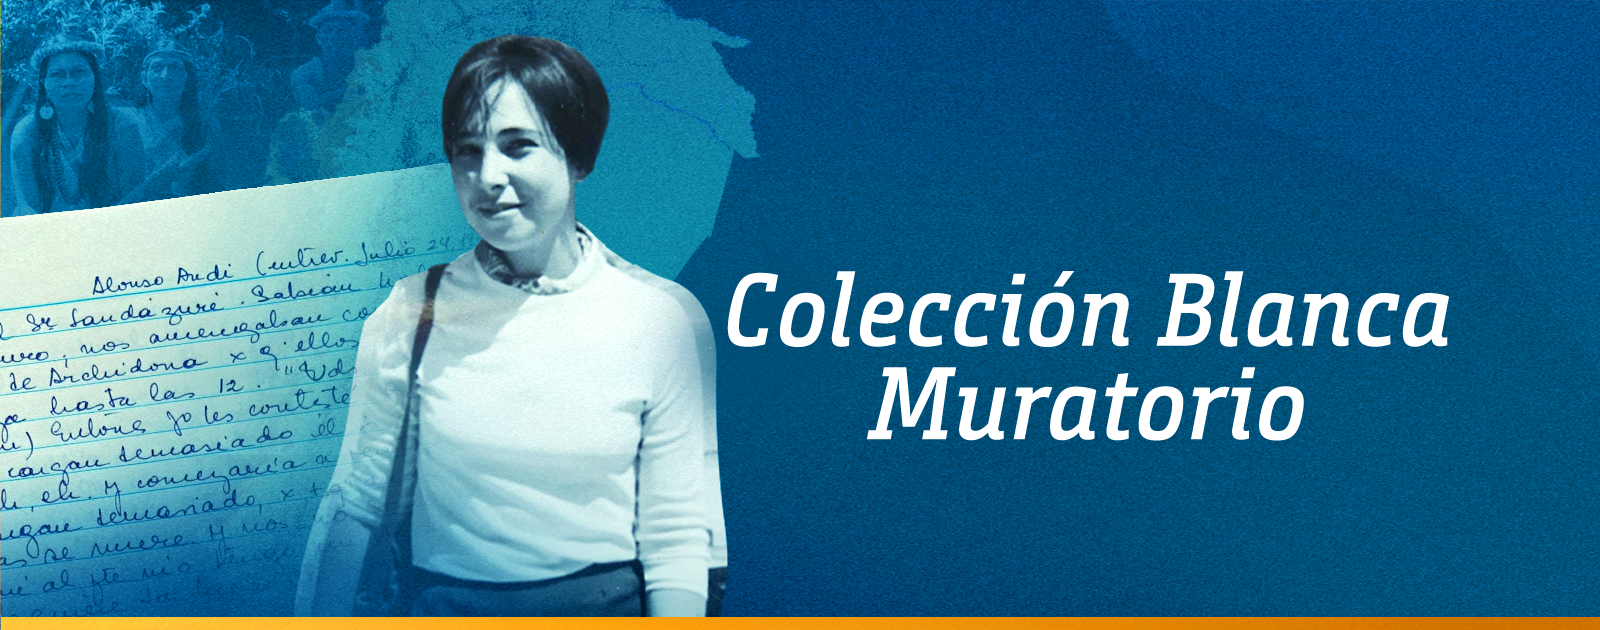 La importante colección de Blanca Muratorio y su preservación en la Biblioteca Digital - FLACSO Andes